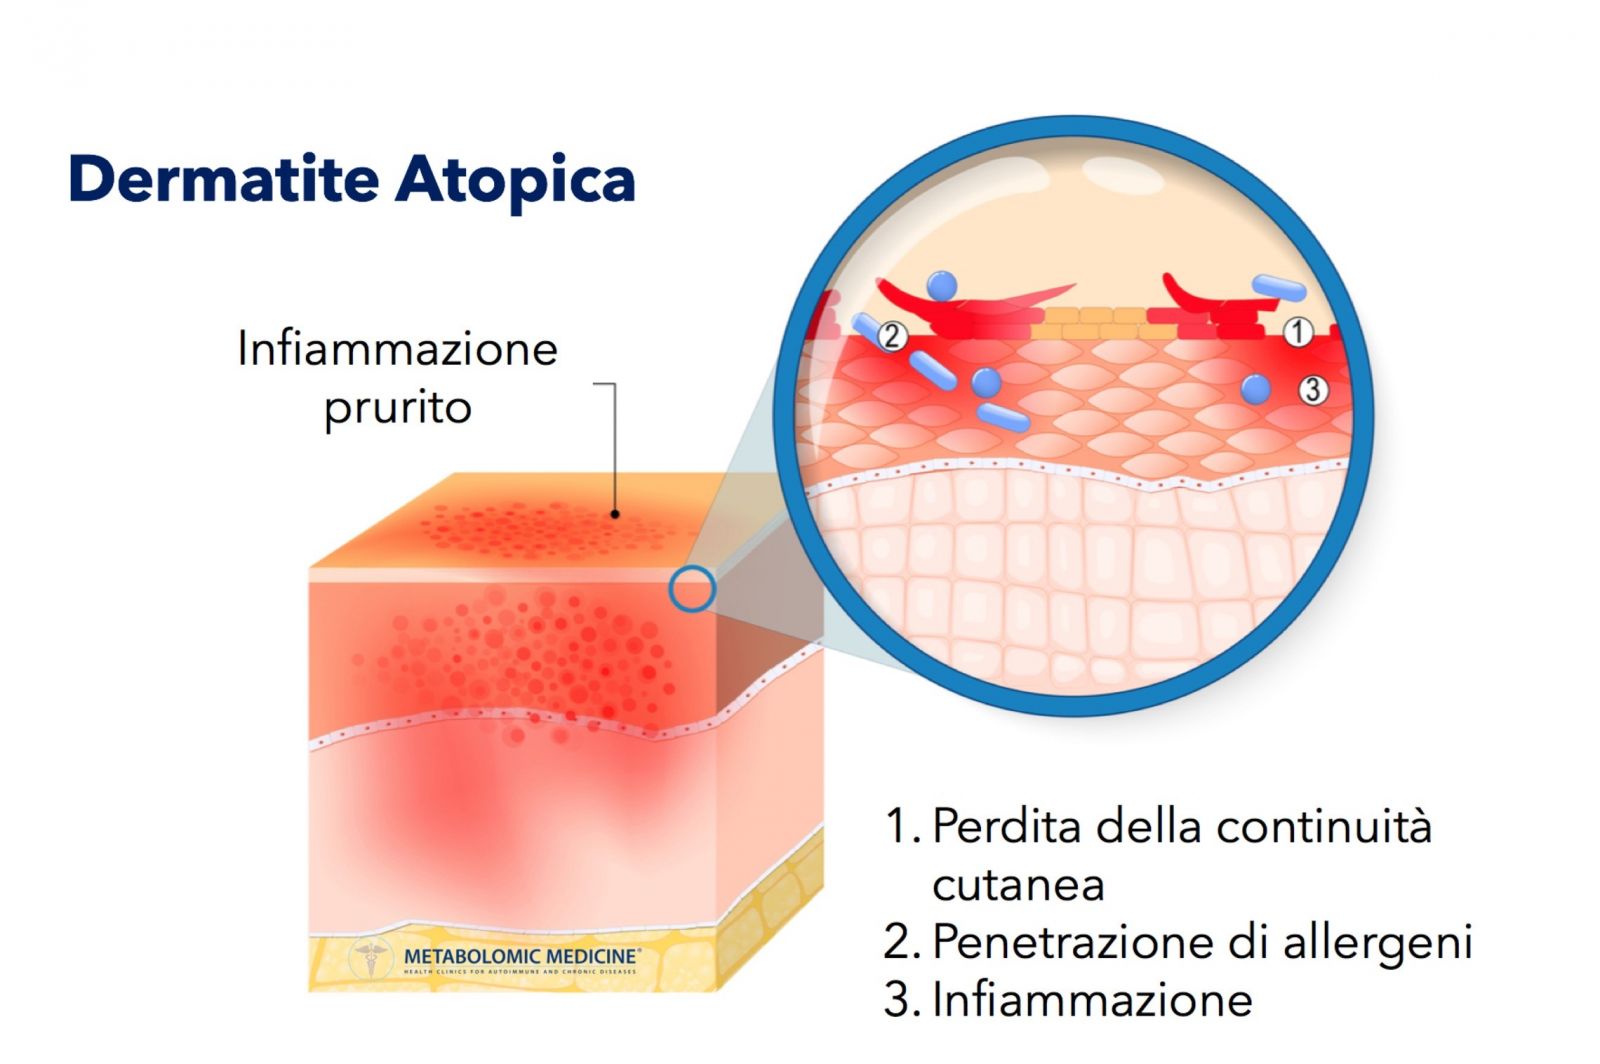 Dermatite Atopica (Eczema)